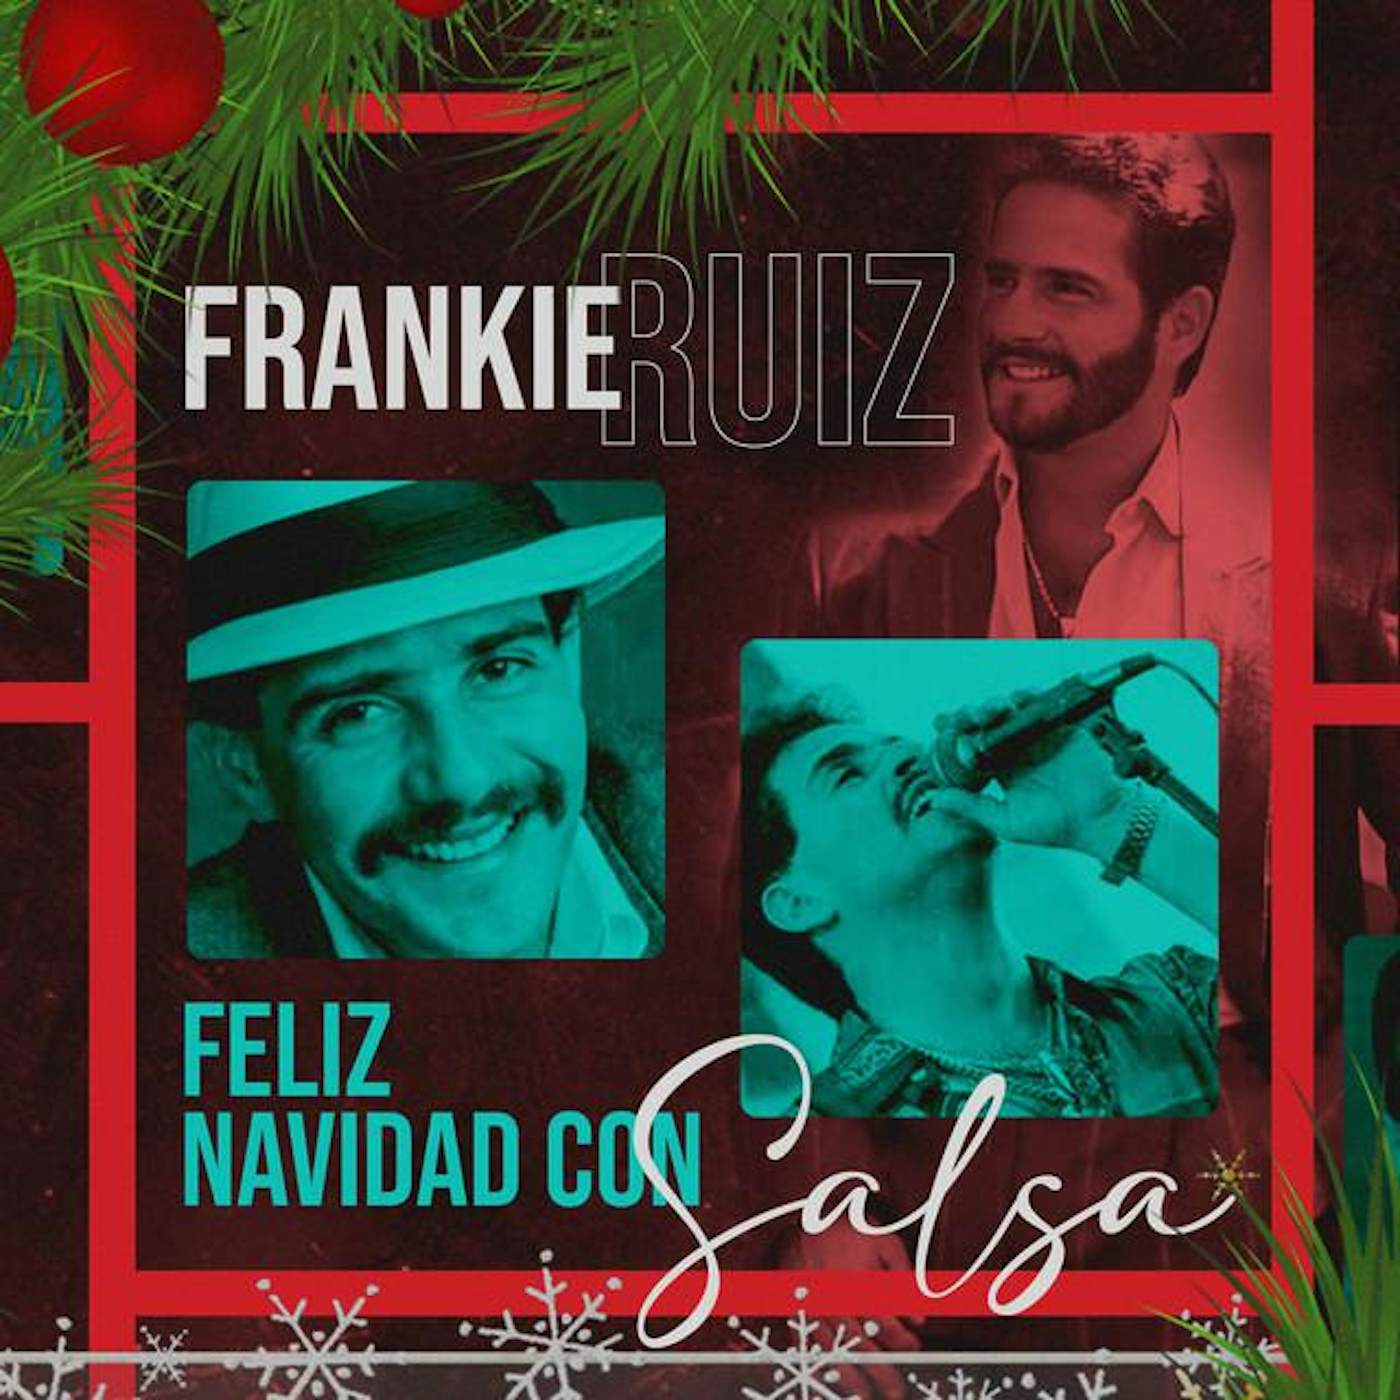 Frankie Ruiz